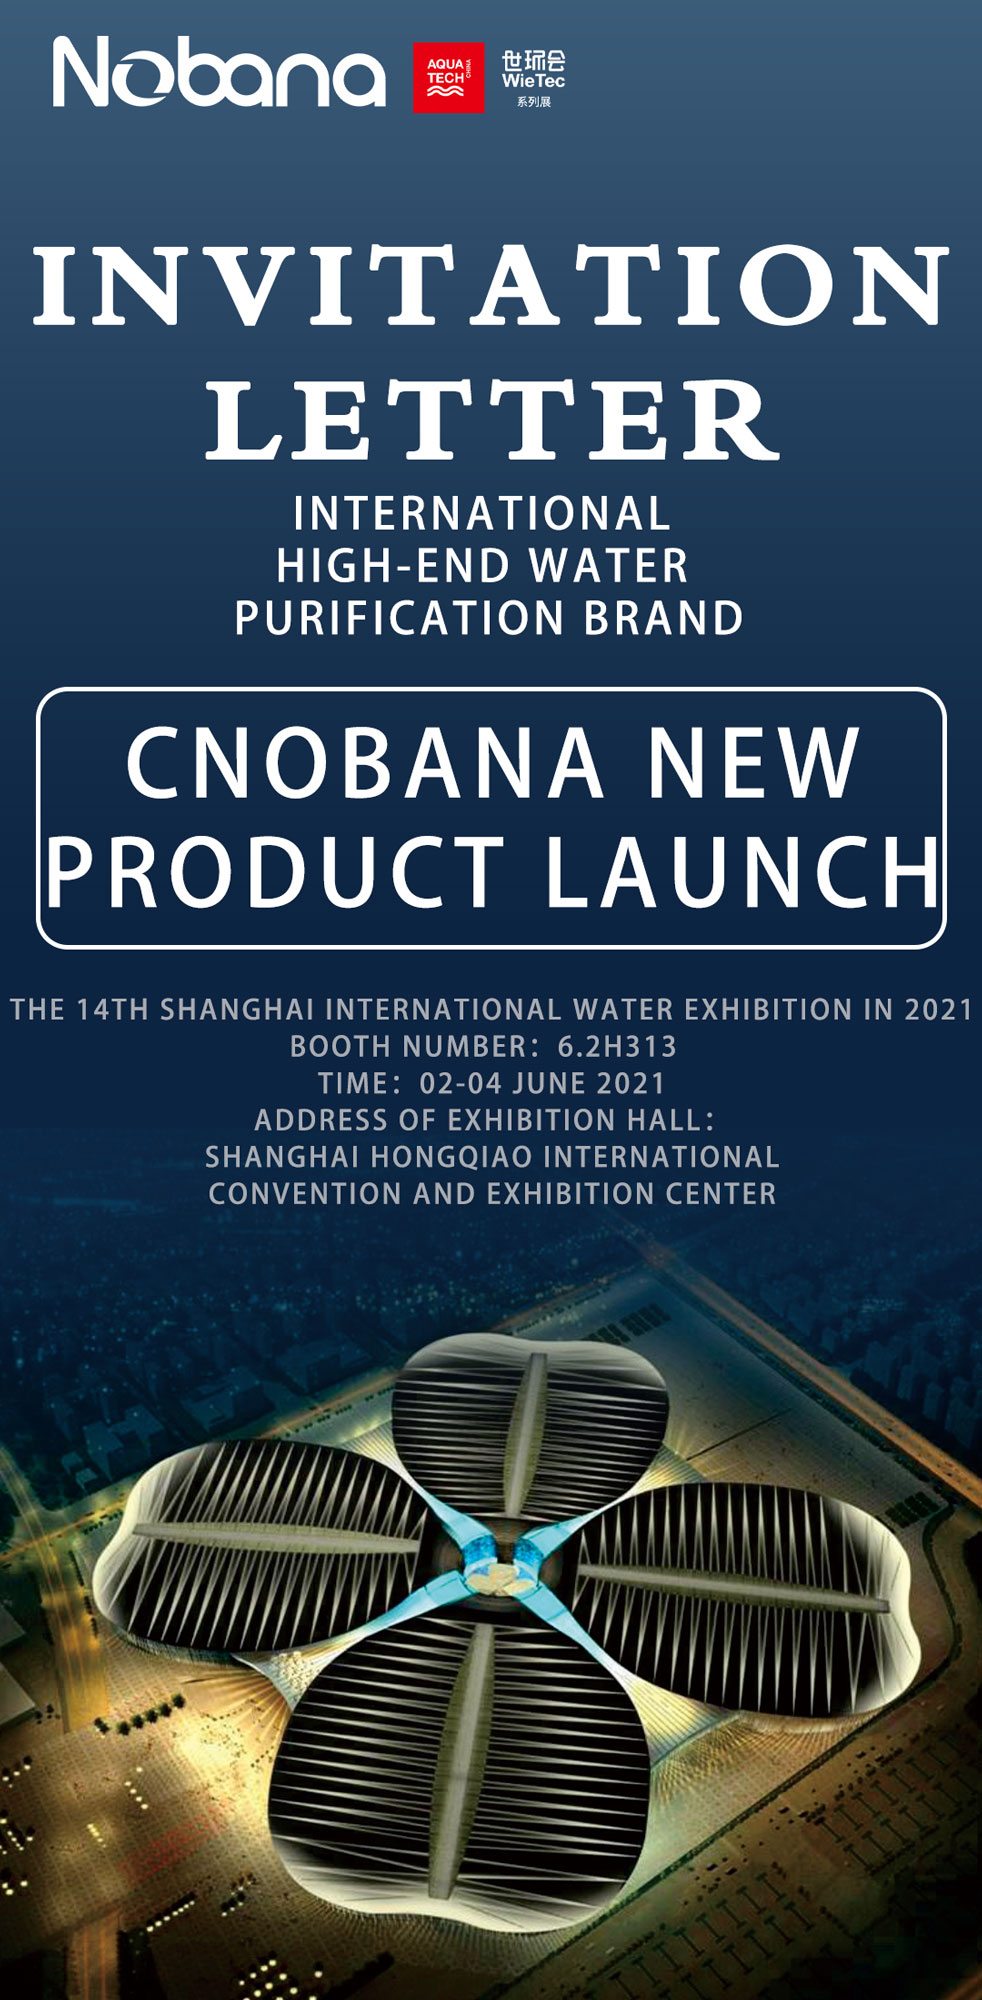 Shanghai International Water Exhibition